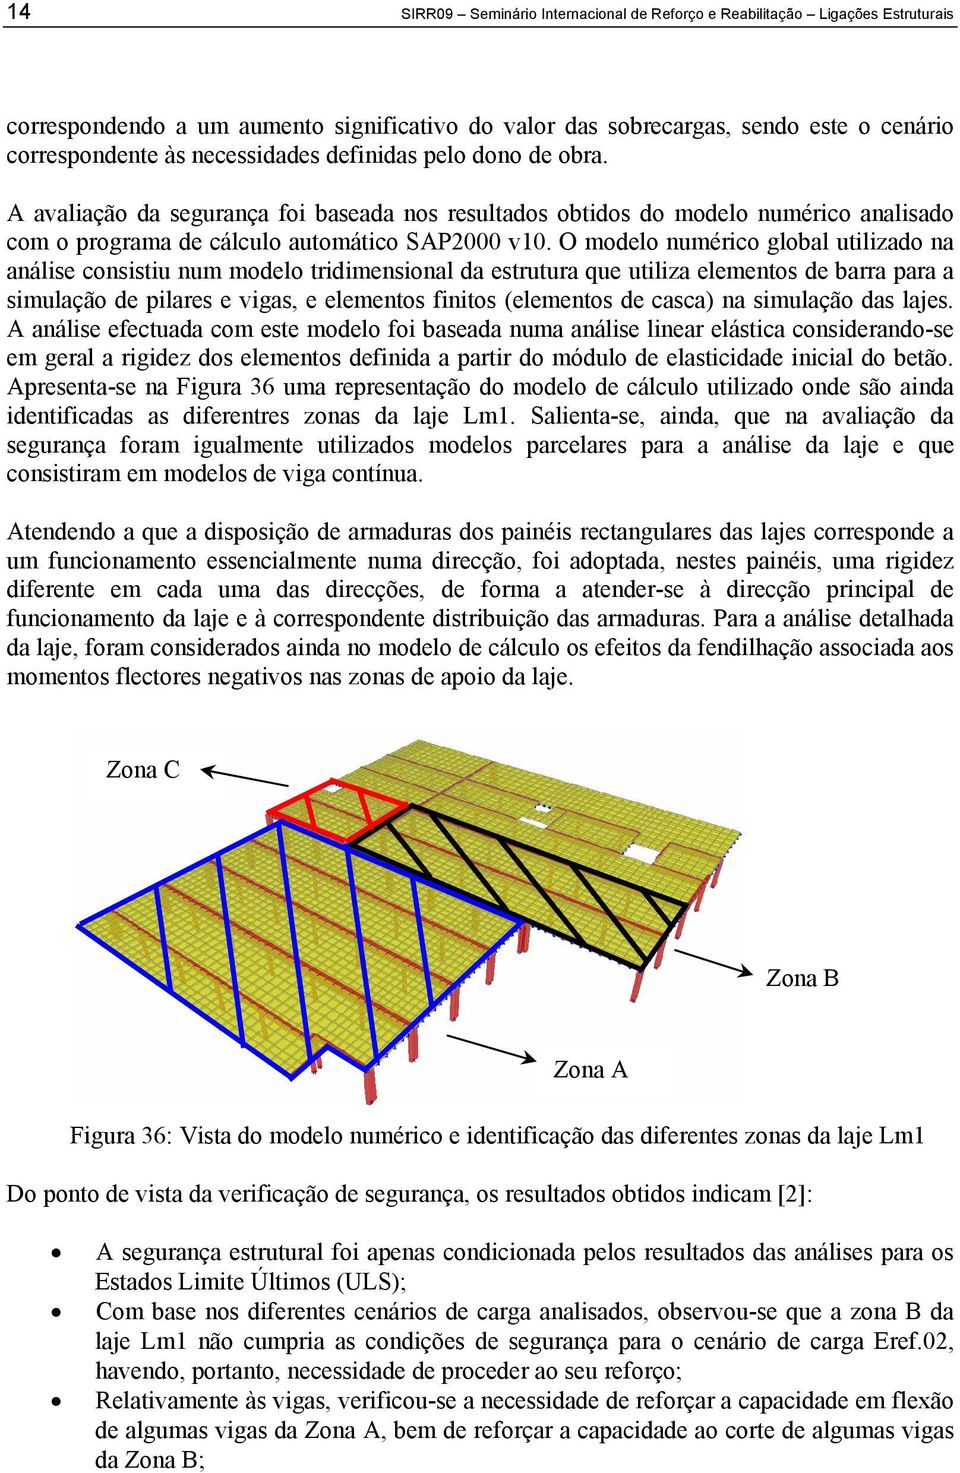 O modelo numérico global utilizado na análise consistiu num modelo tridimensional da estrutura que utiliza elementos de barra para a simulação de pilares e vigas, e elementos finitos (elementos de